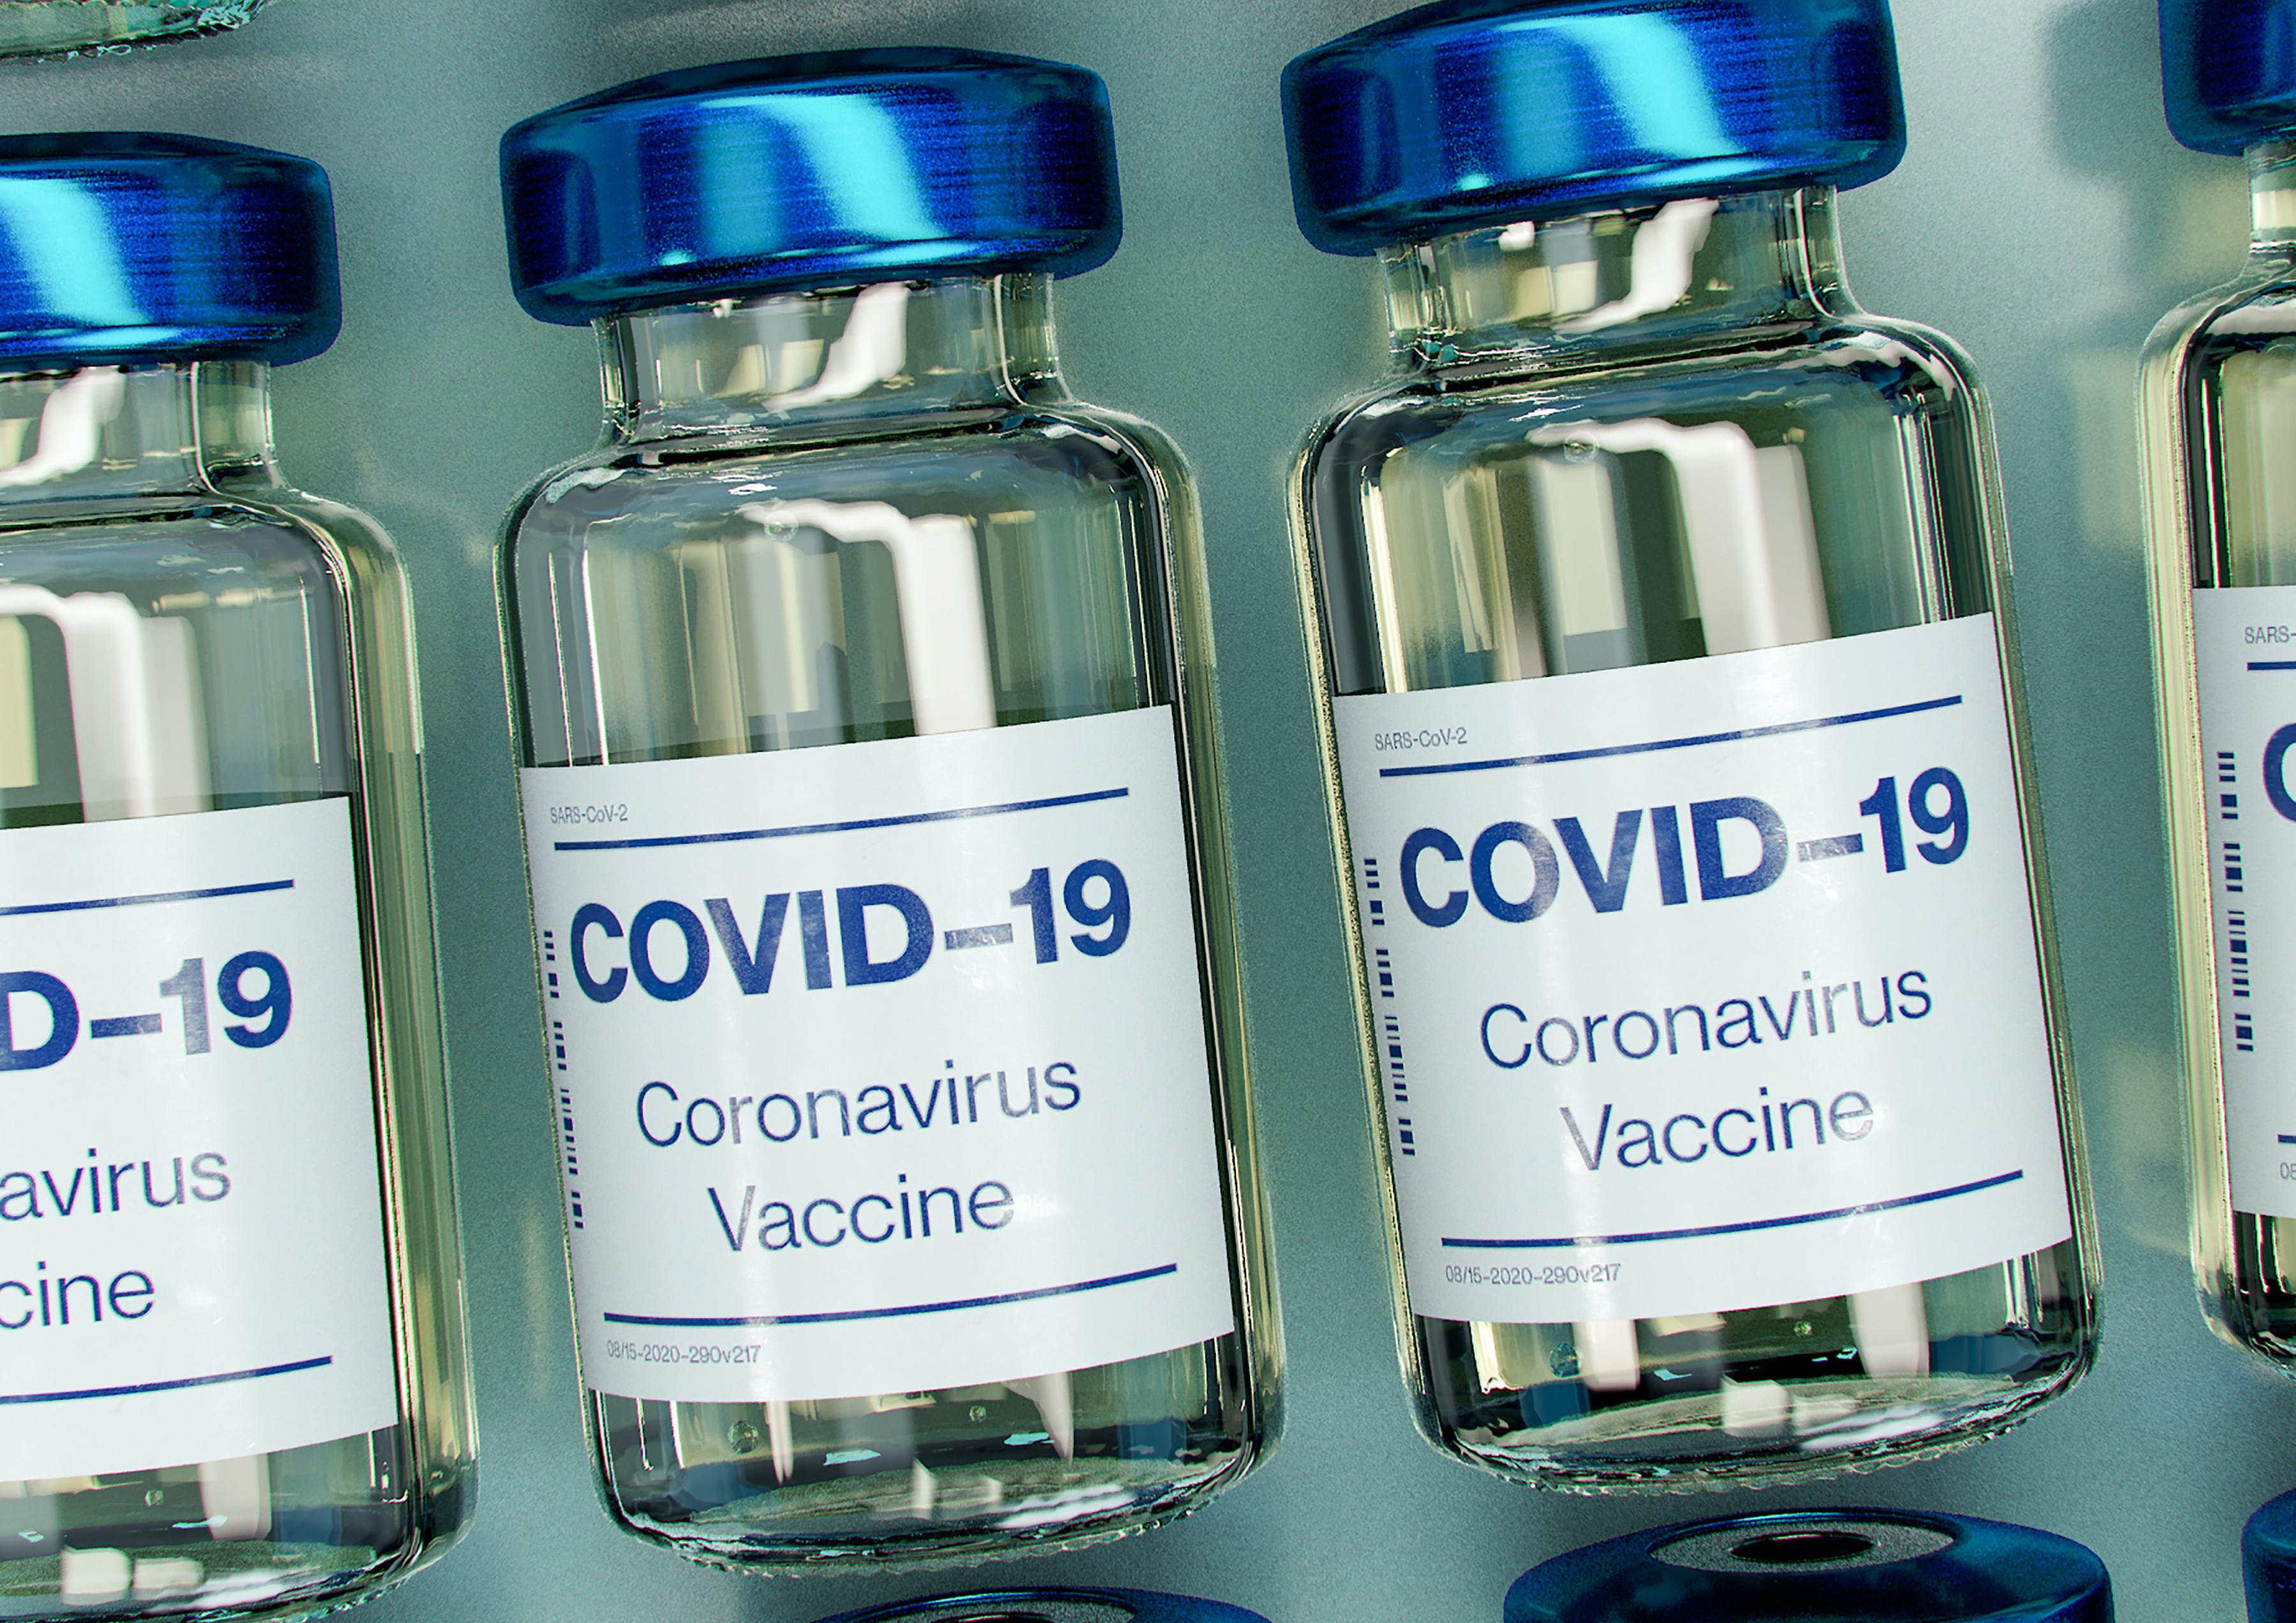 COVID-19 vvaccines